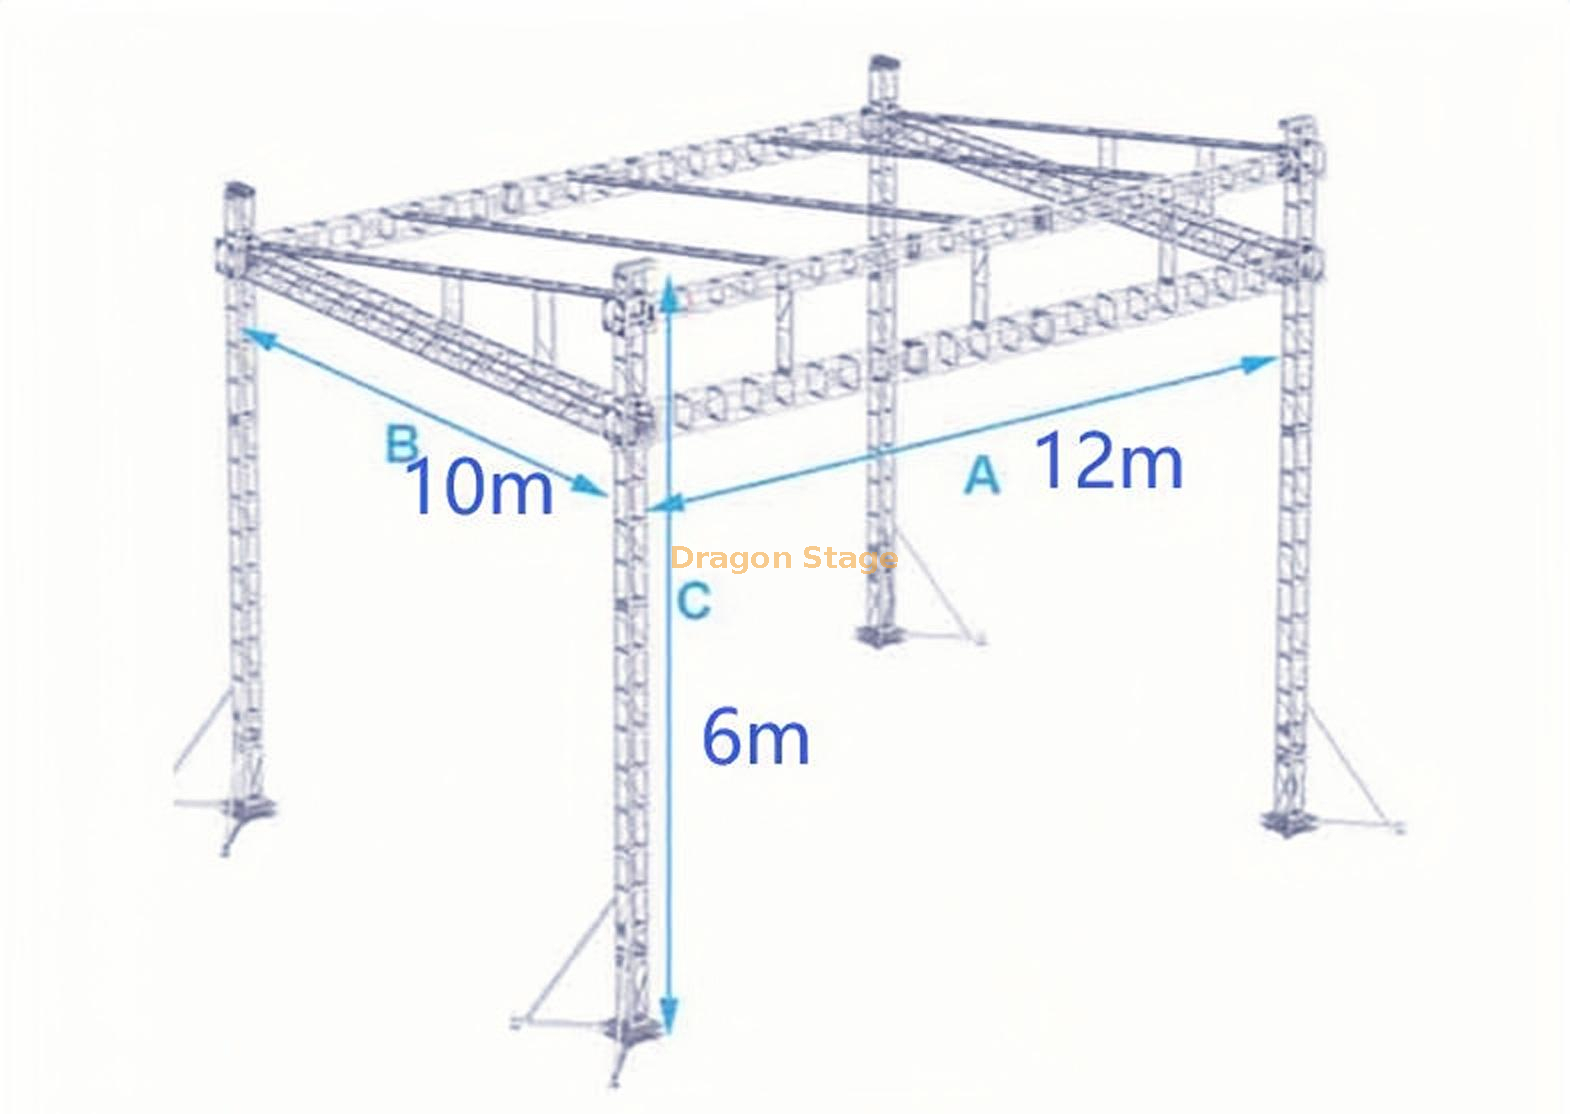 Structure de toit plat en treillis portable en aluminium Prix 12x10x6m